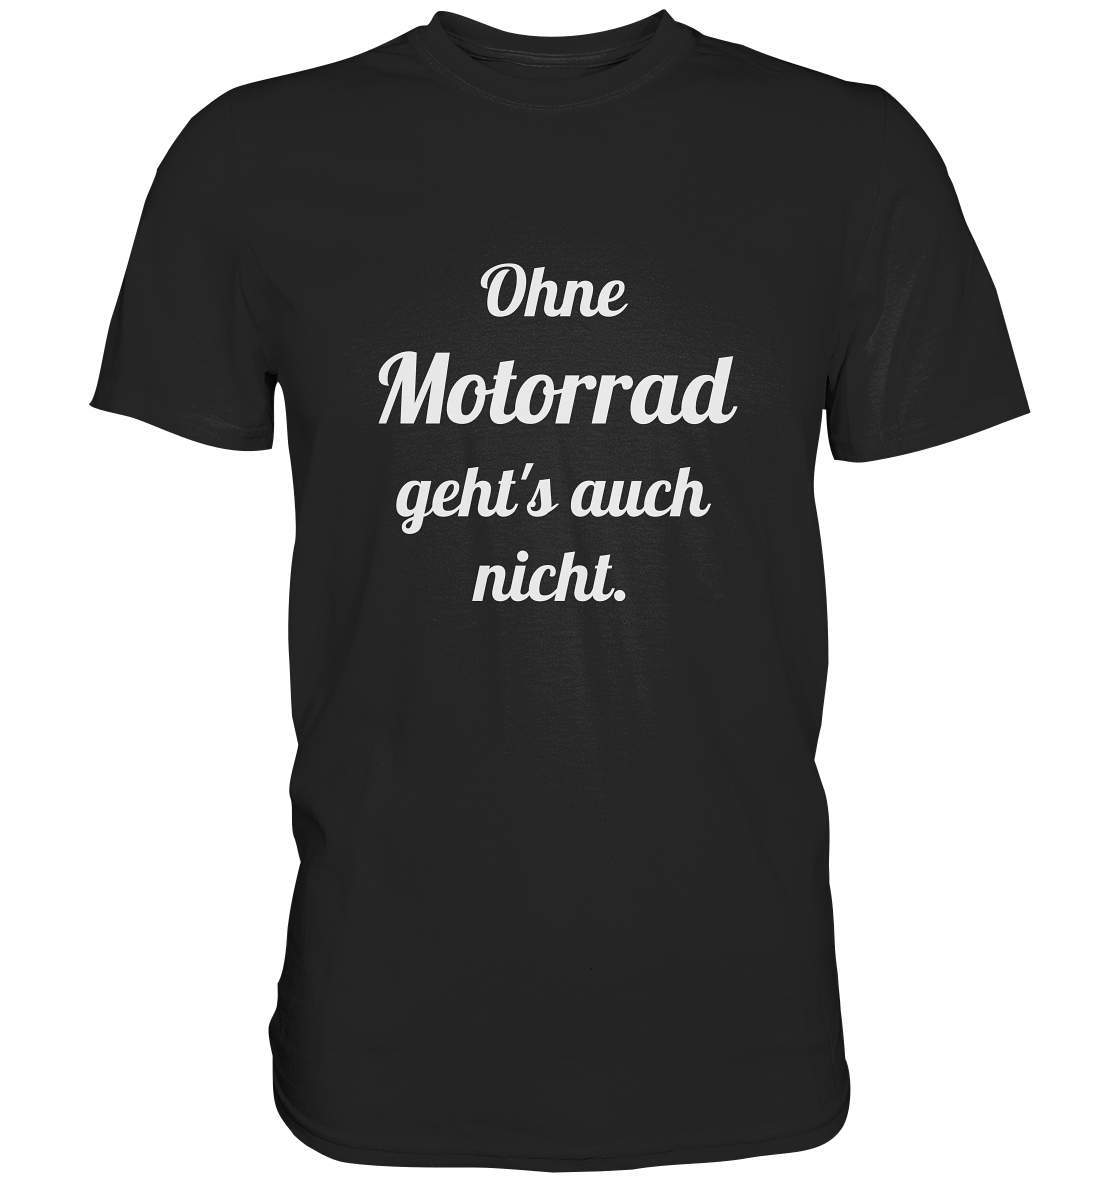 Herren-T-Shirt, Rundhals mit Aufdruck "Ohne Motorrad geht's auch nicht", schwarz